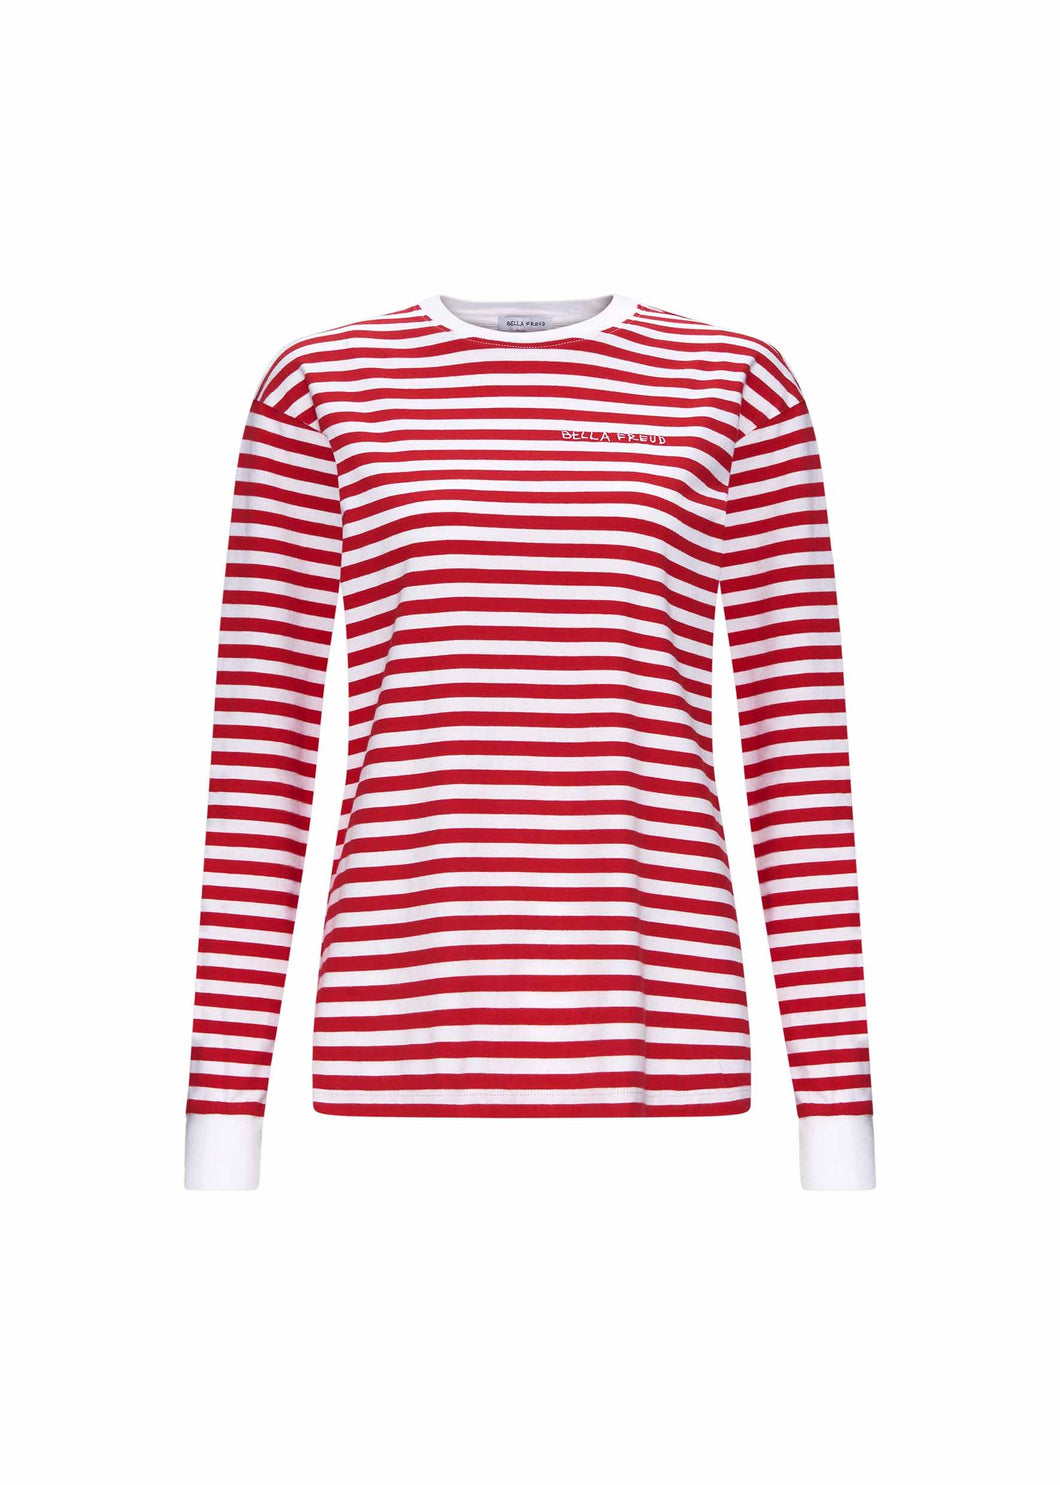 Bella Freud L/S Striped T-shirt - Red